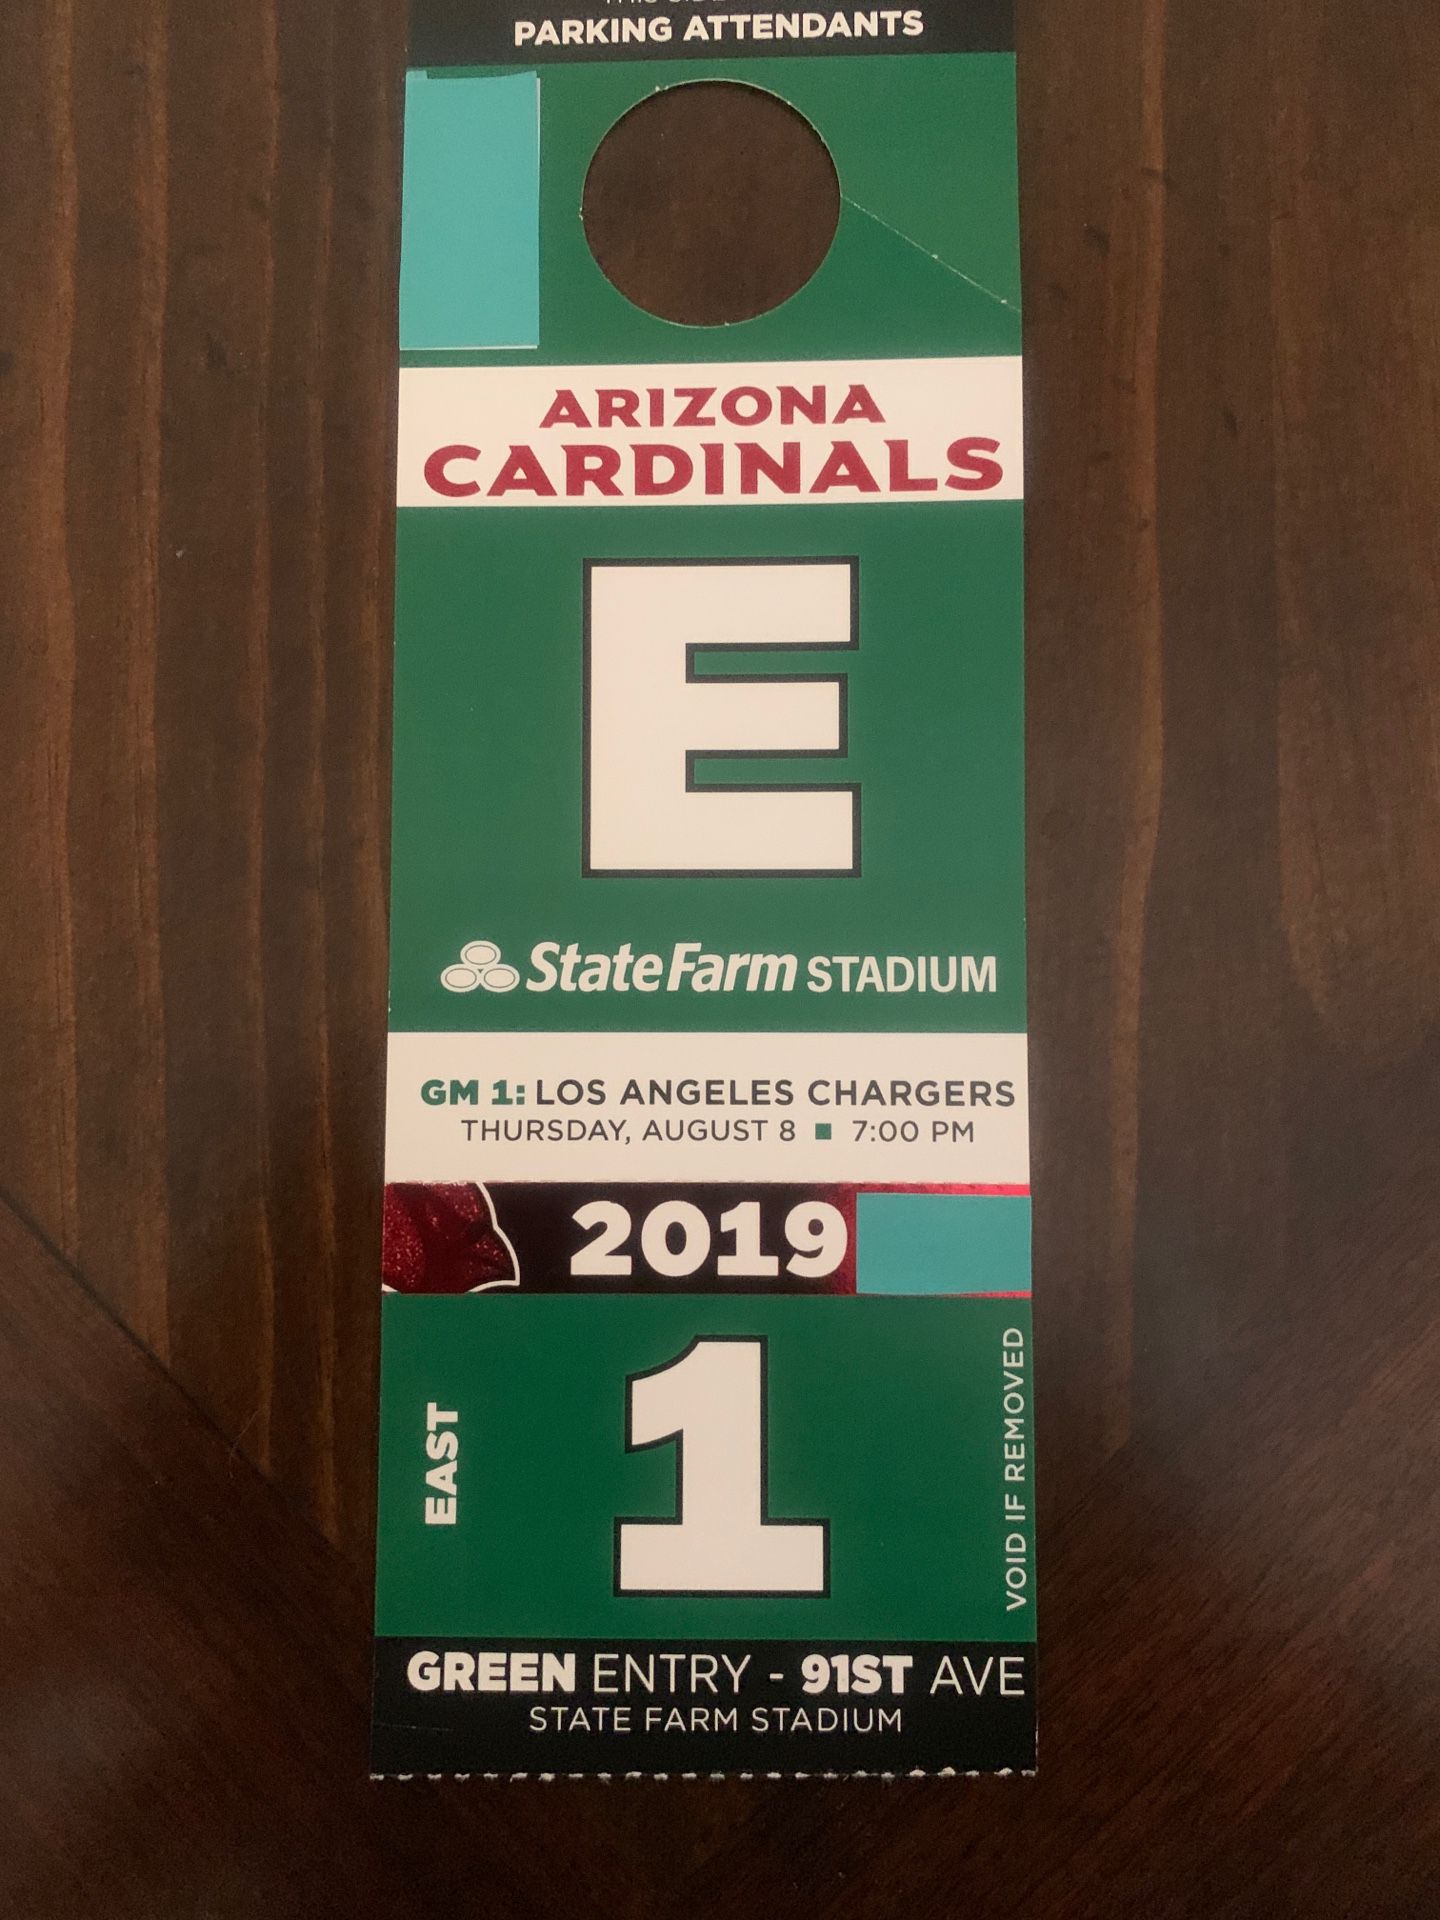 Arizona Cardinals parking pass